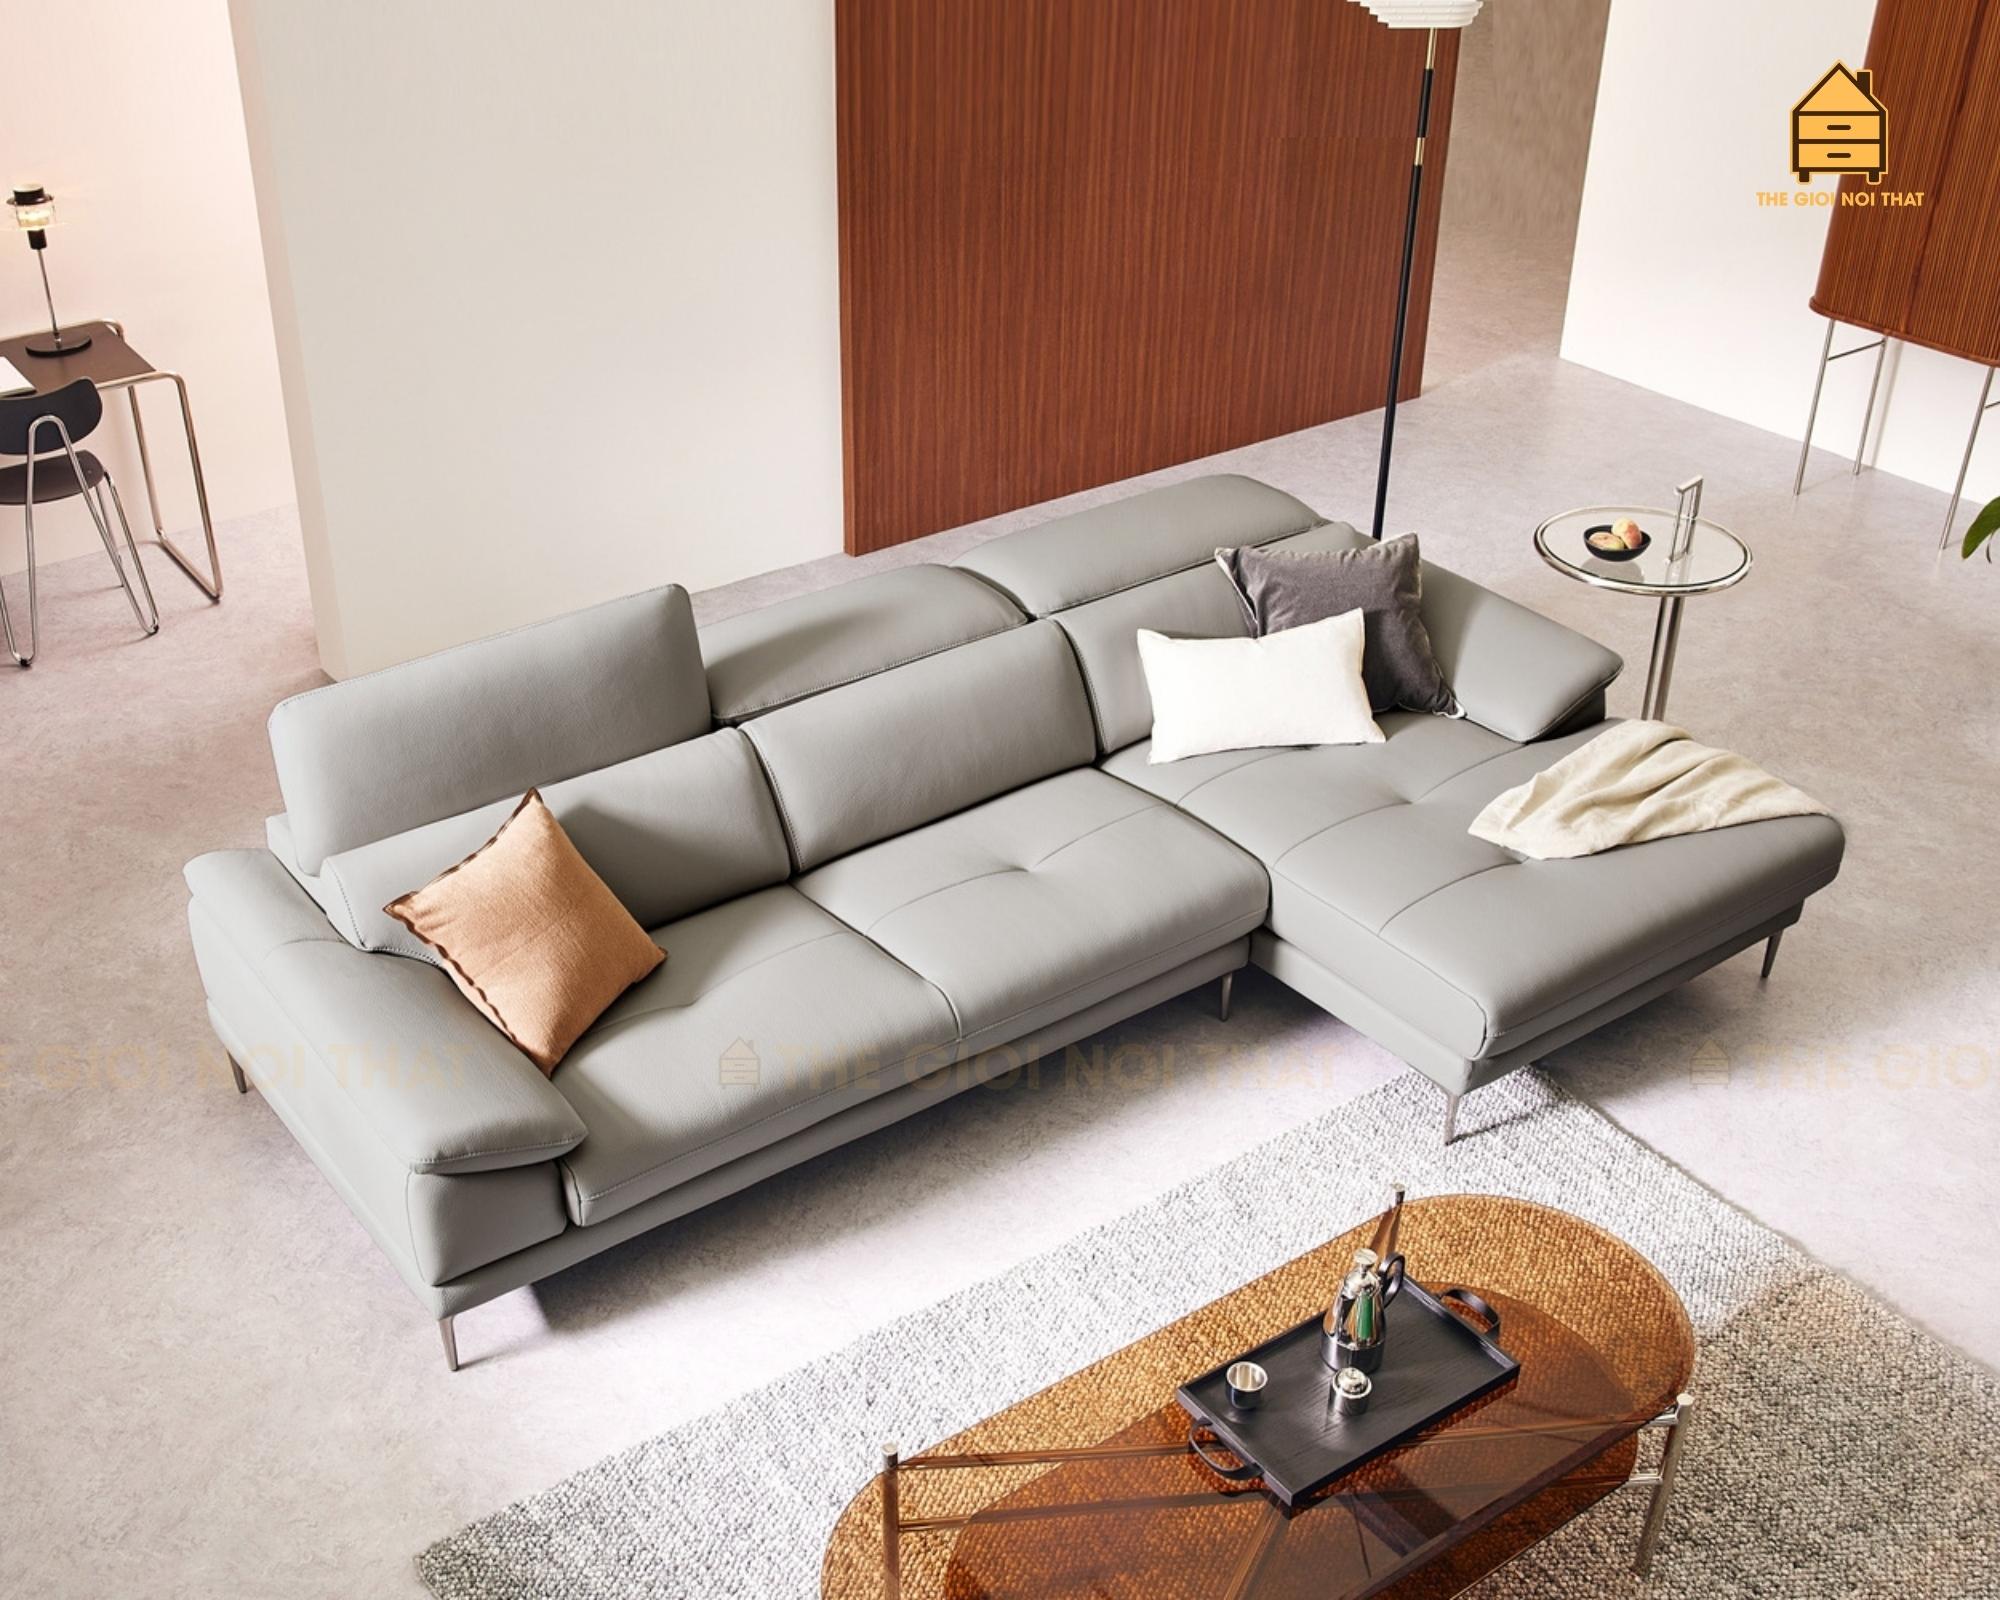 Ghế sofa da thật Italy T11 – Nội Thất Văn Phòng, Nhà ở, Gia đình, Phòng ngủ, phòng khách.